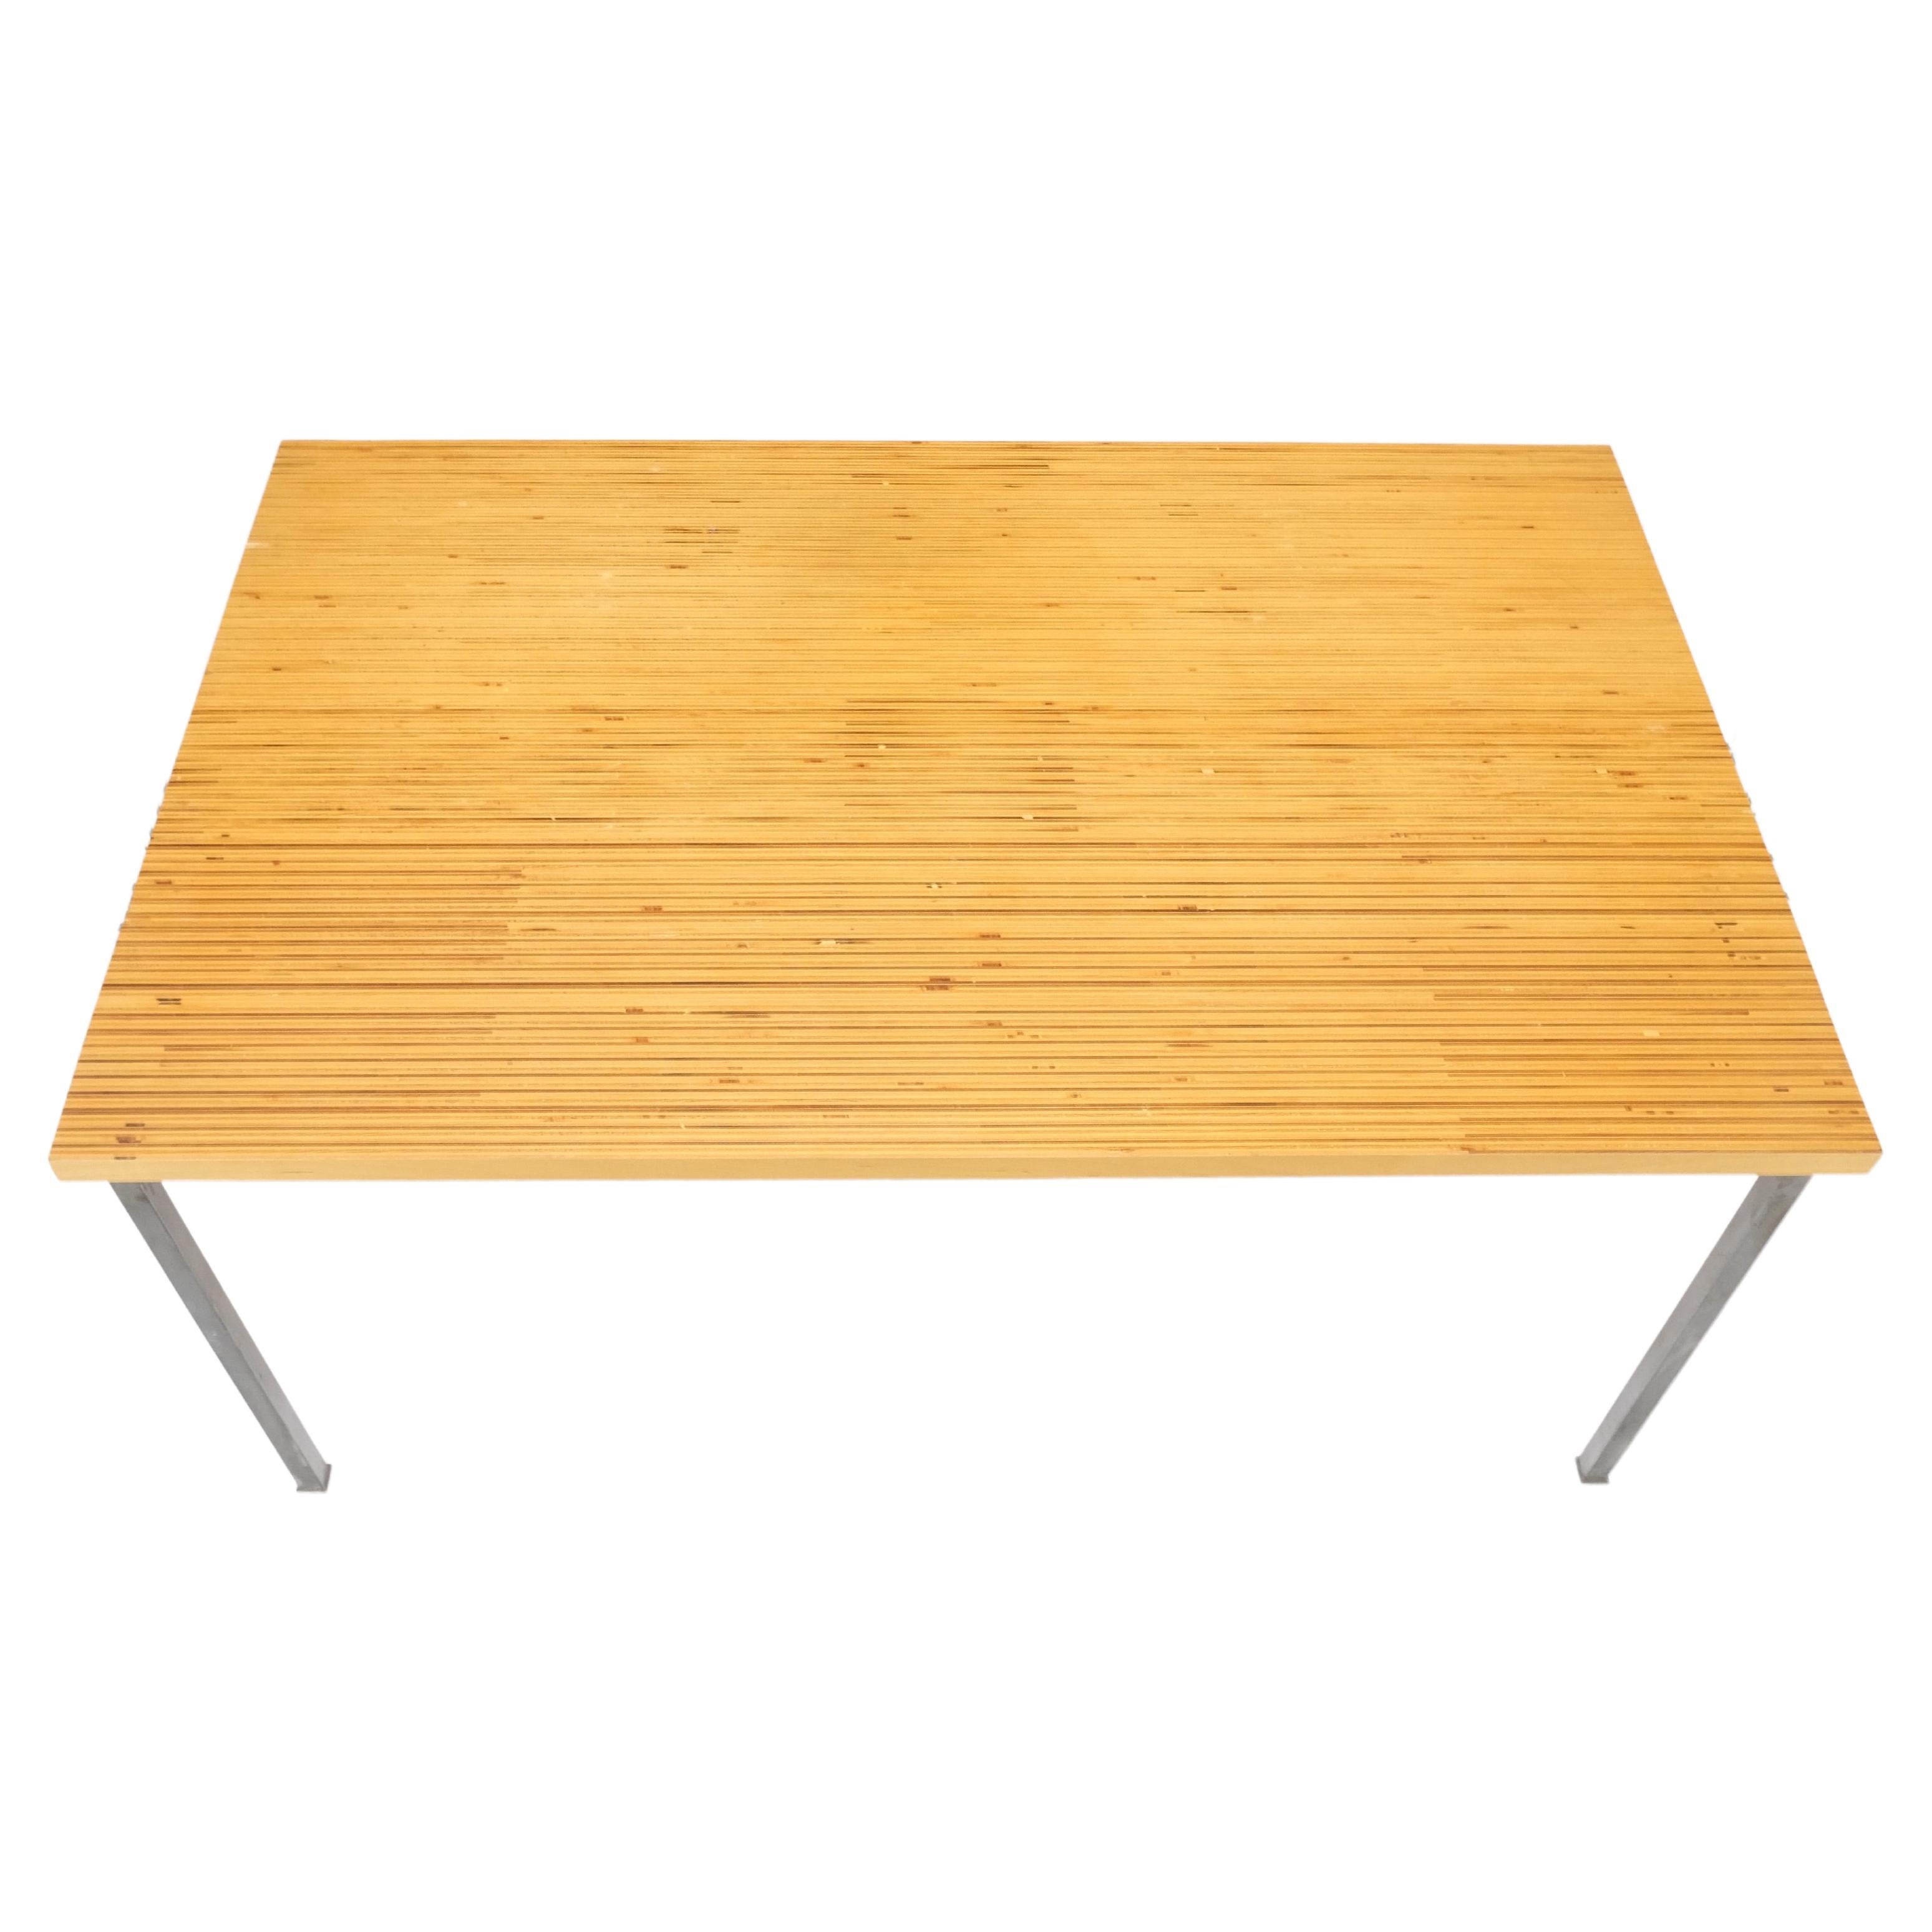 Holzstreifen gemusterte Tischplatte mit einzigartigem Muster, Industriesockel, MINT